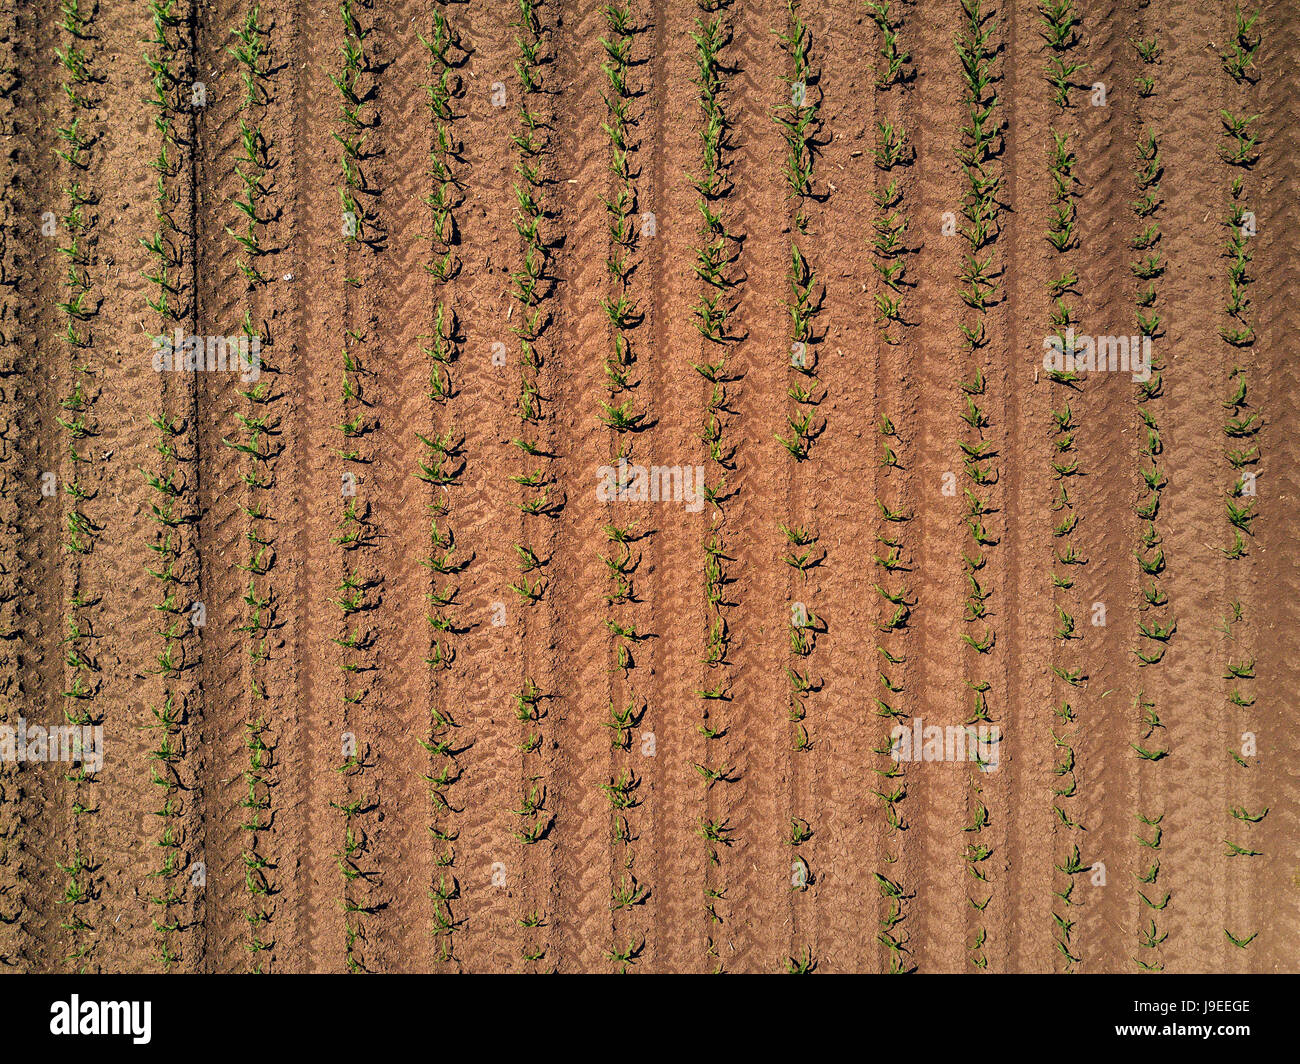 Vista aérea del campo de cultivo de maíz de maíz cultivado desde el punto de vista de drone Foto de stock